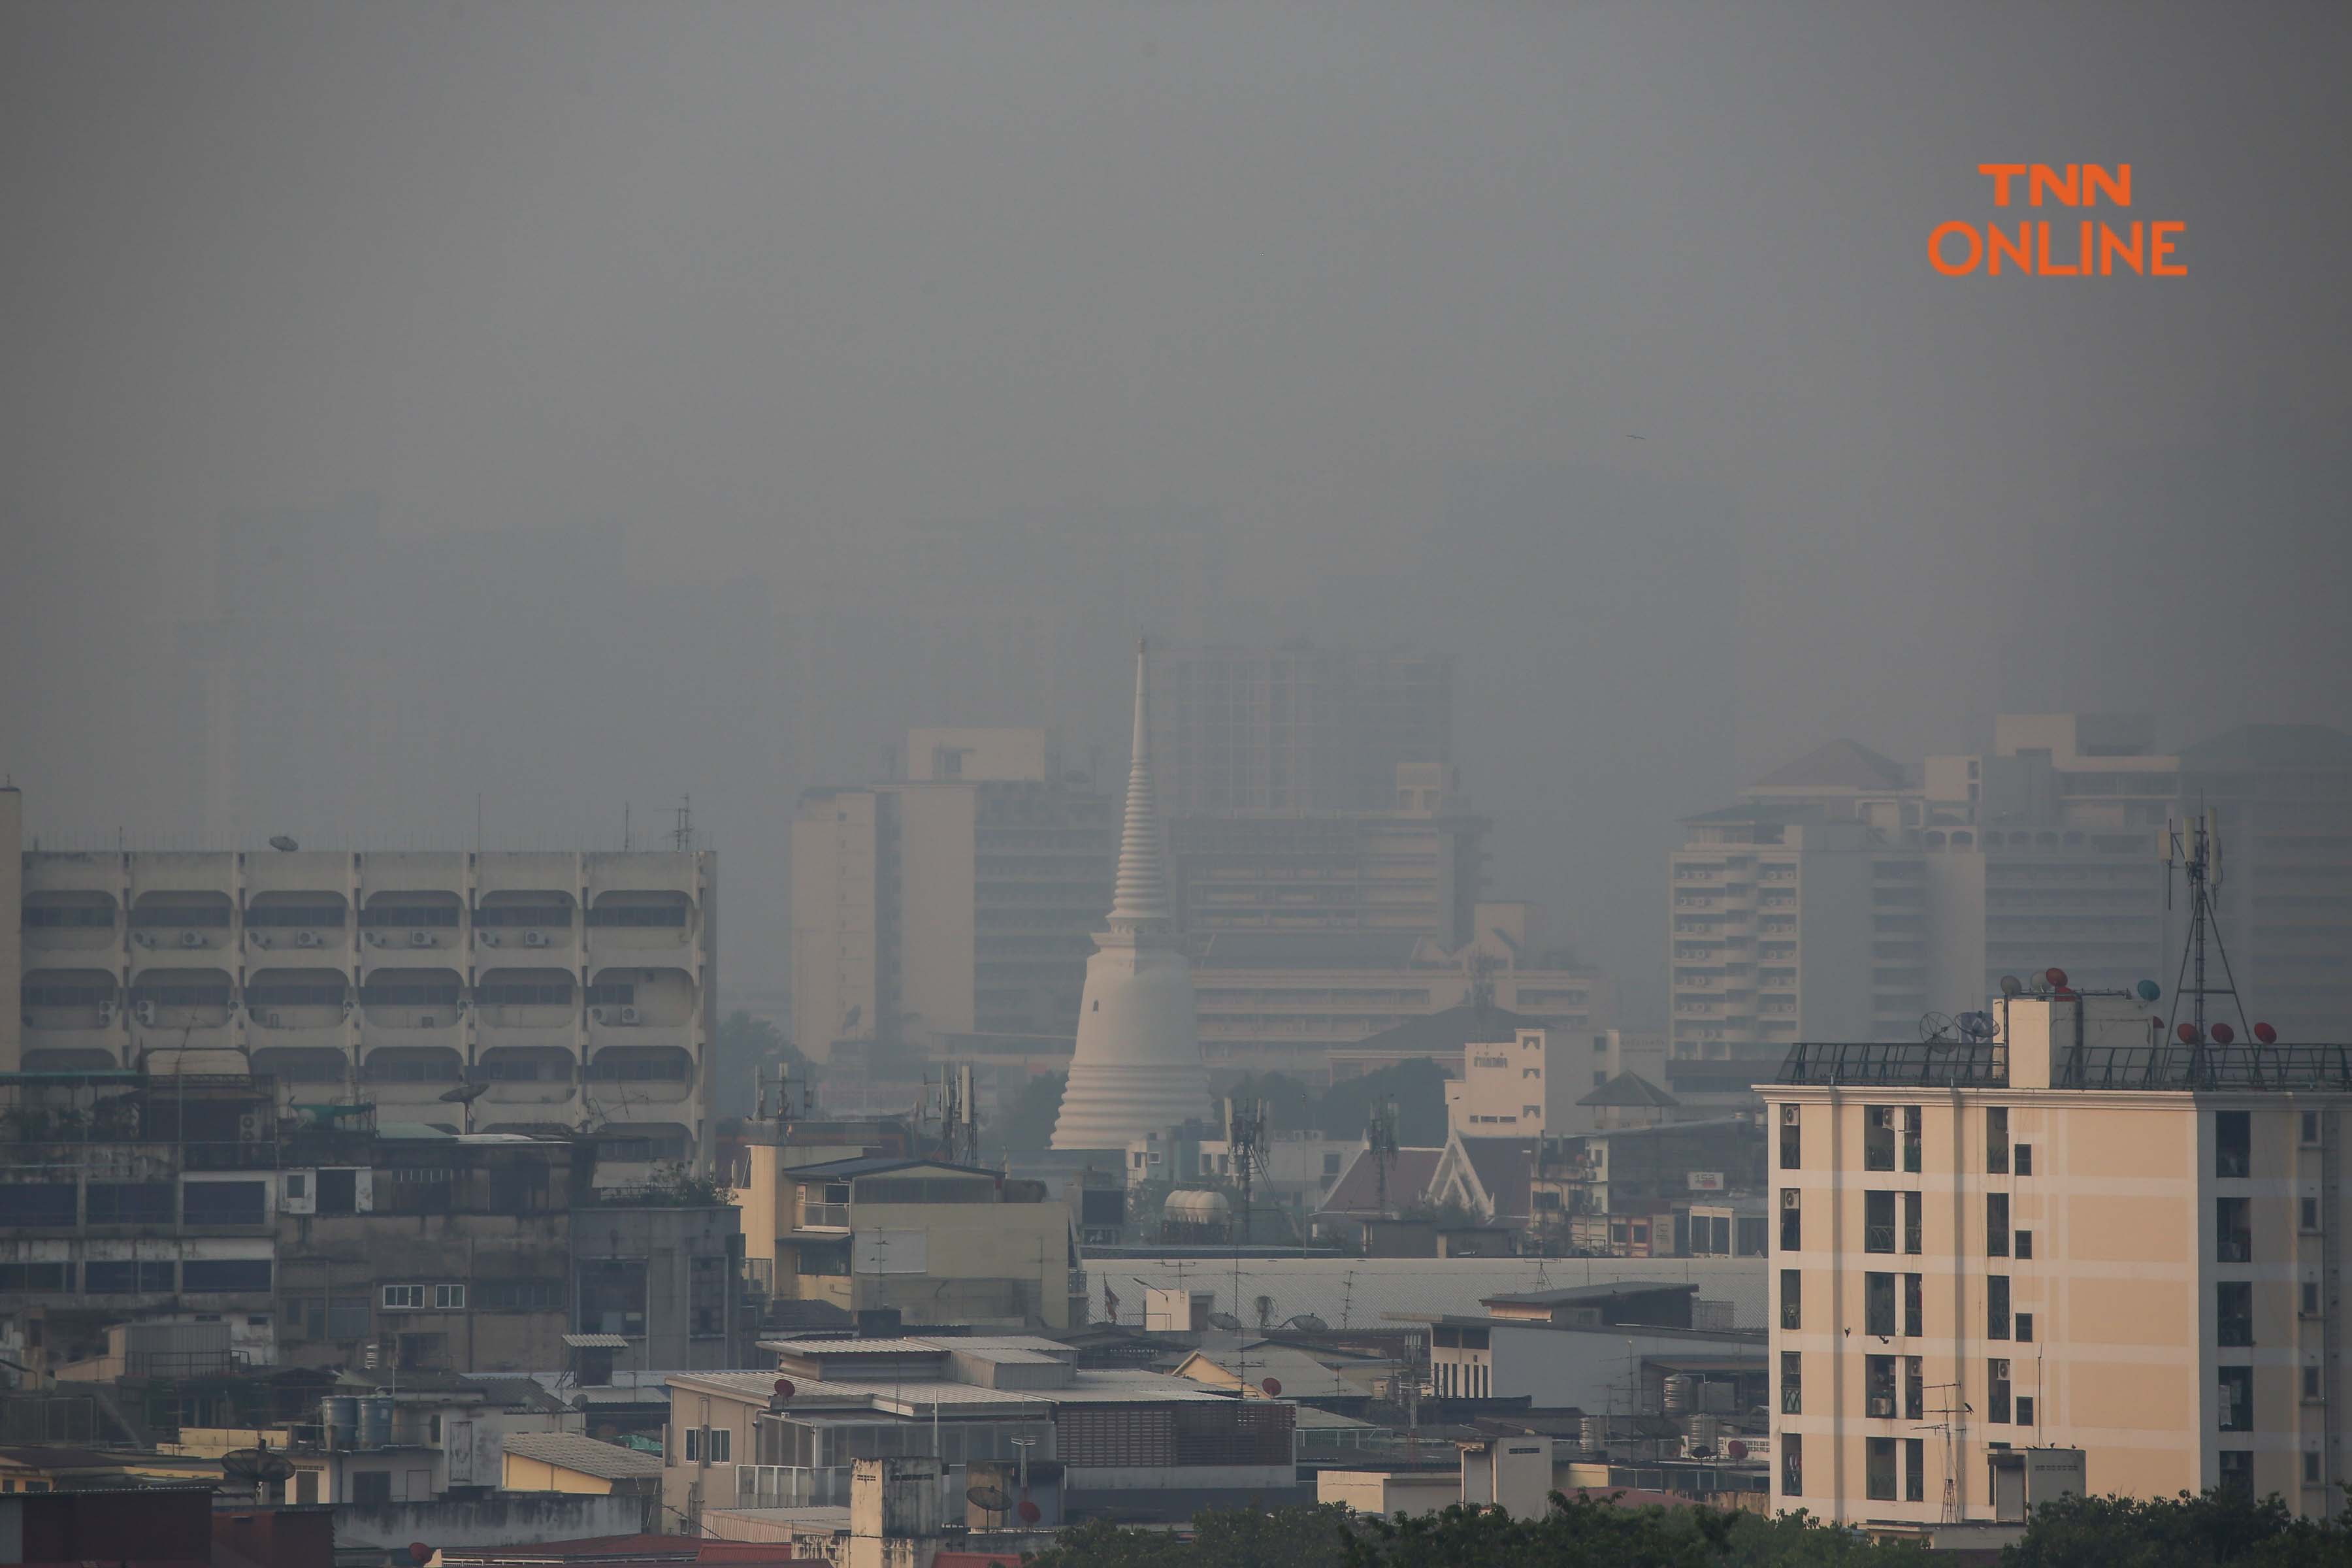 ประมวลภาพ ฝุ่น PM 2.5 ปกคลุมทั่วกรุง เกินค่ามาตราฐานหลายพื้นที่